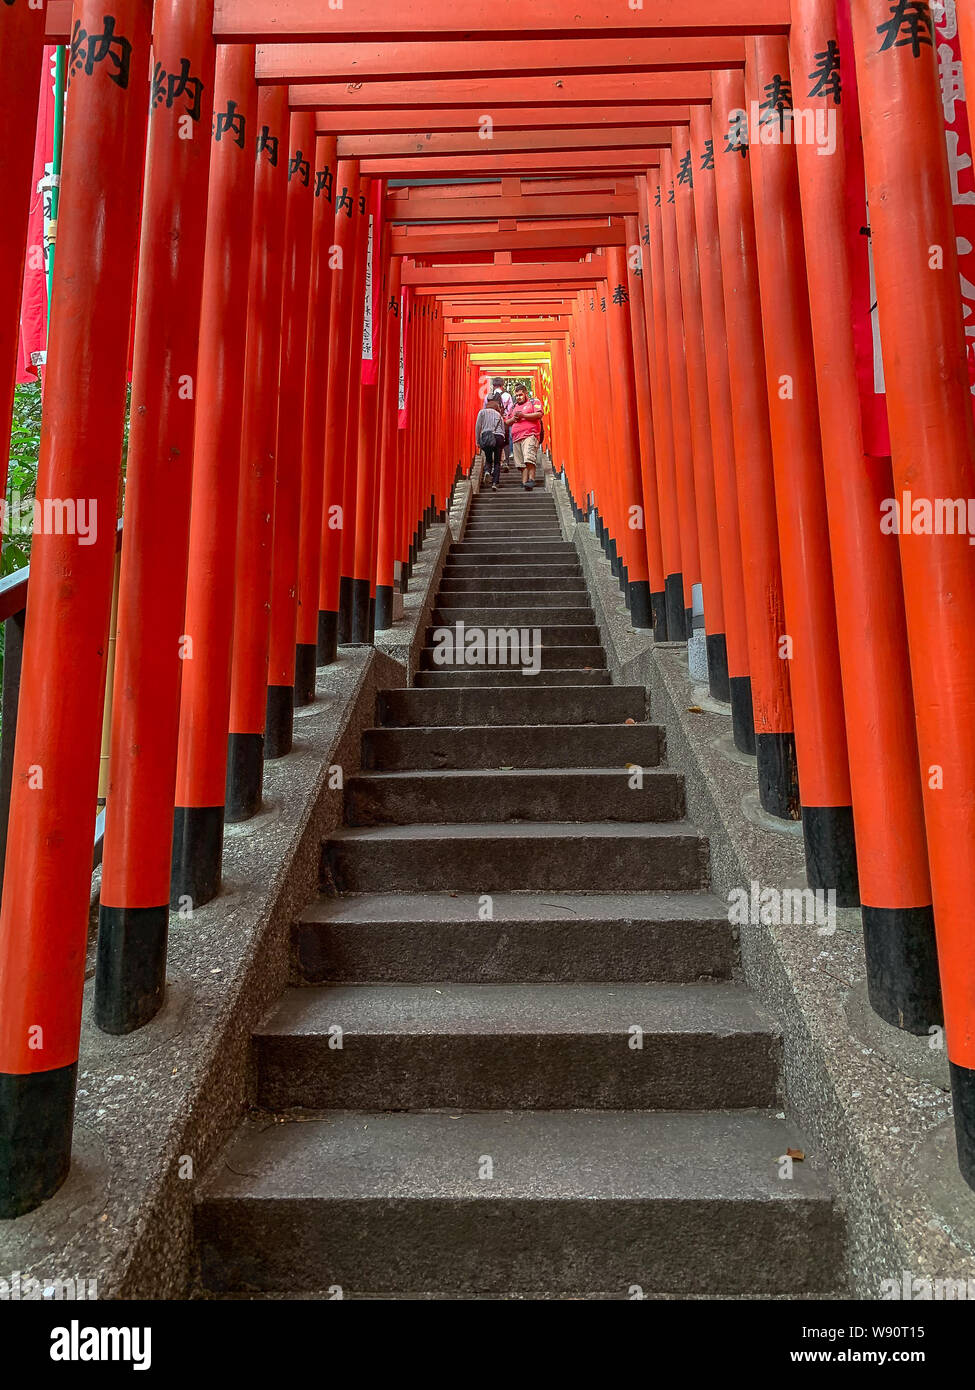 Menschen zu Fuß nach unten Schritte in einem Tunnel der roten hölzernen Tore an der Hie-Jinja Schrein, Nagatacho, Tokio Stockfoto